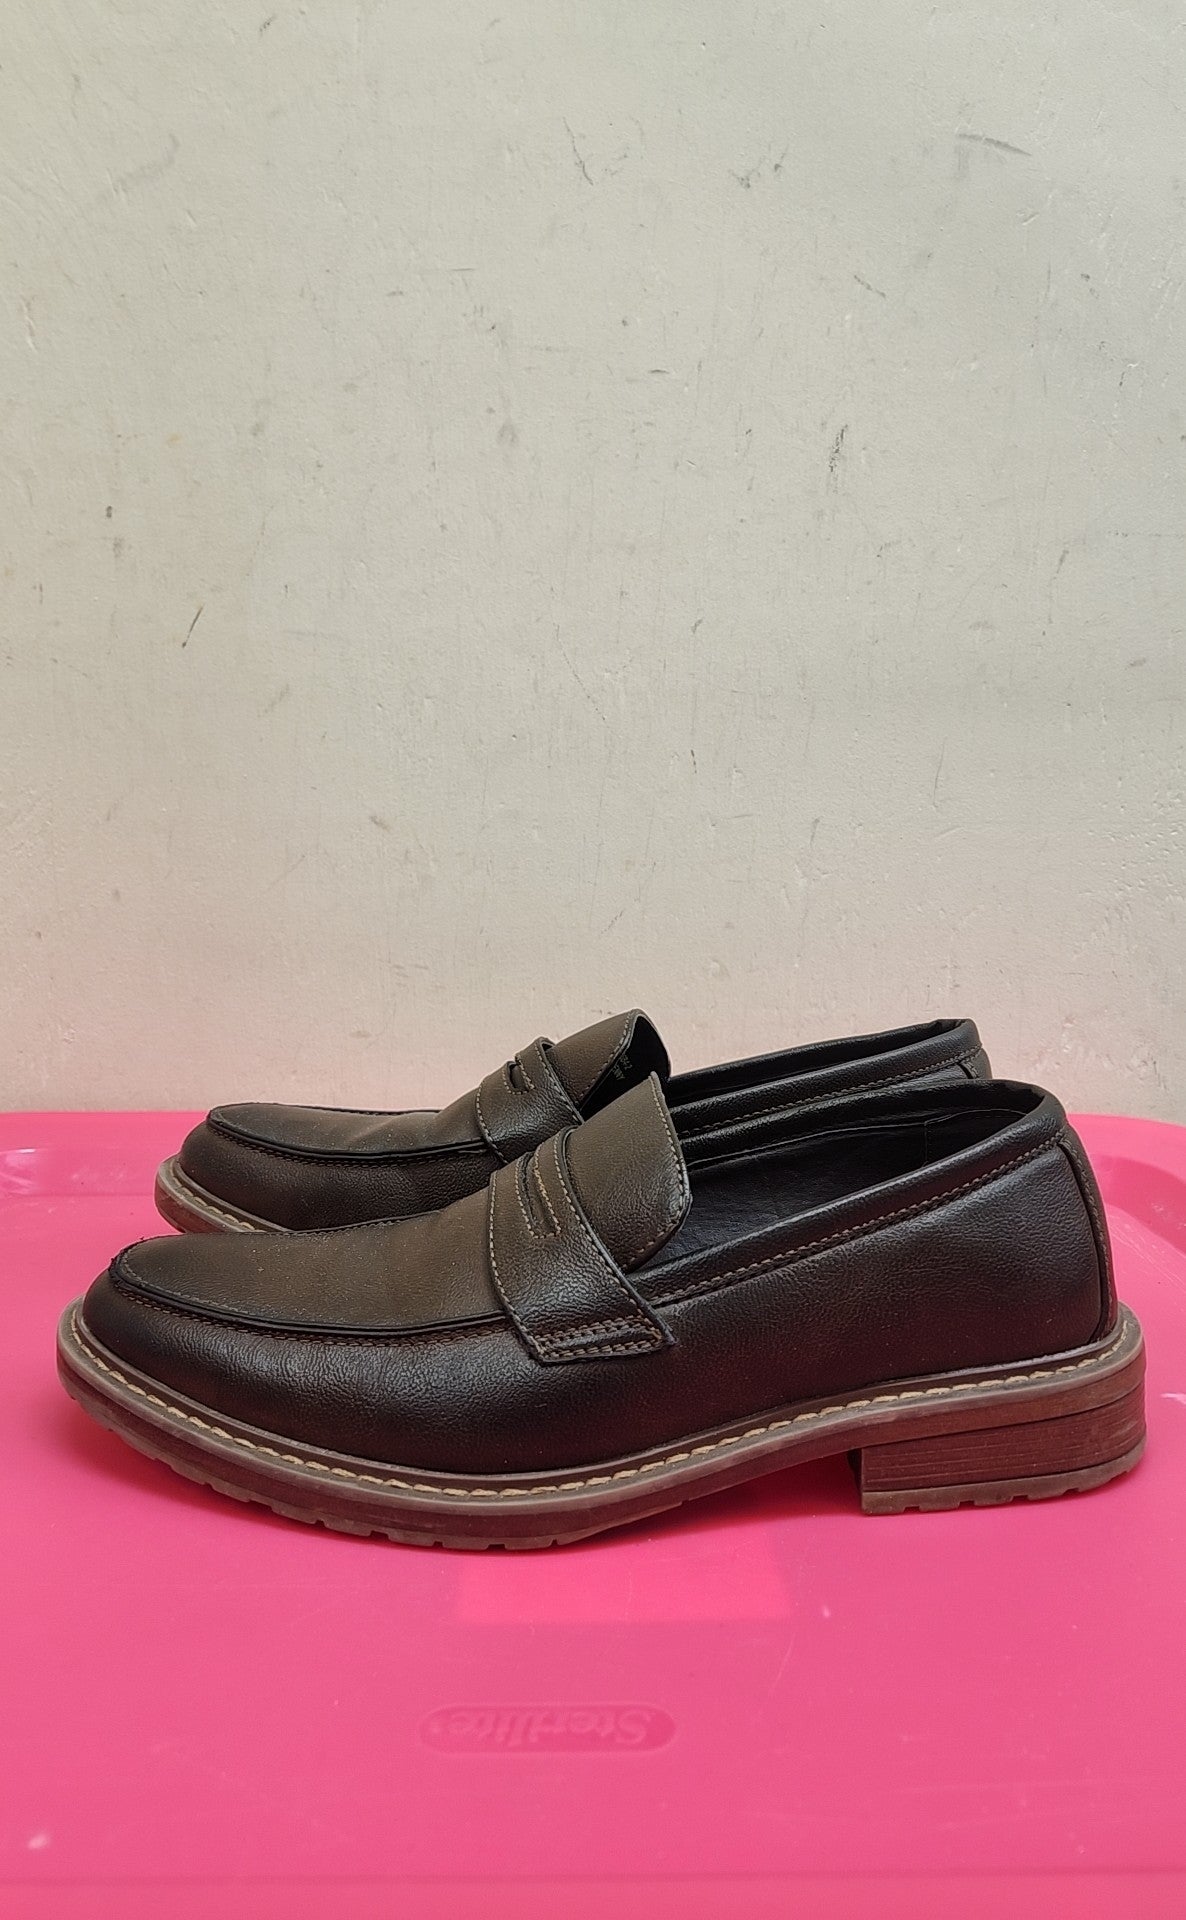 Men's Size 7-1/2 Brown Shoes